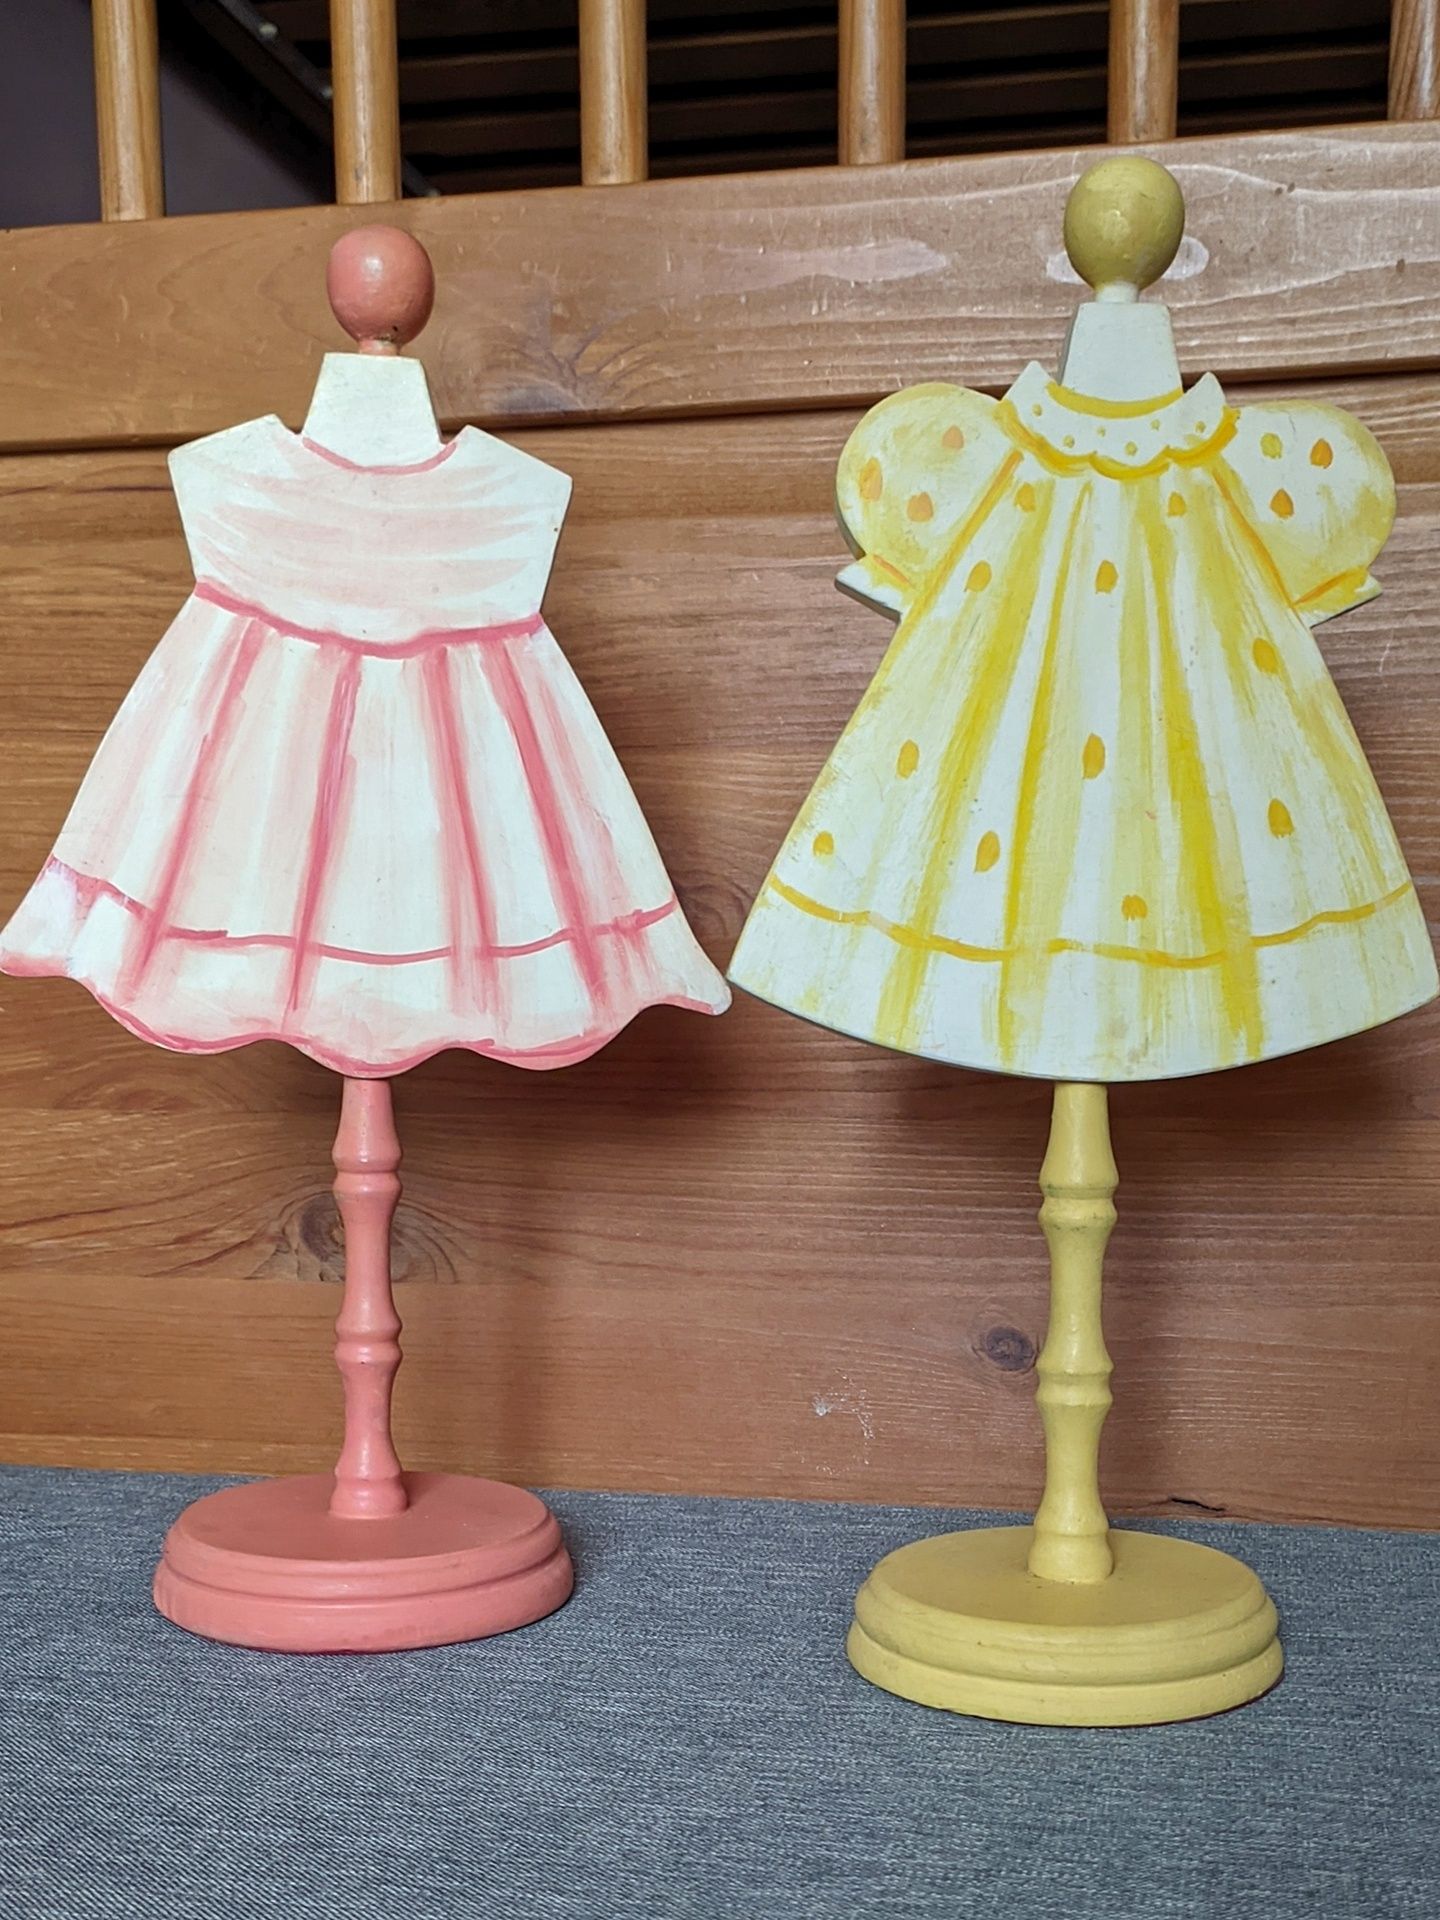 Conjunto de 2 Porta-jóias em madeira: Rosa e amarelo